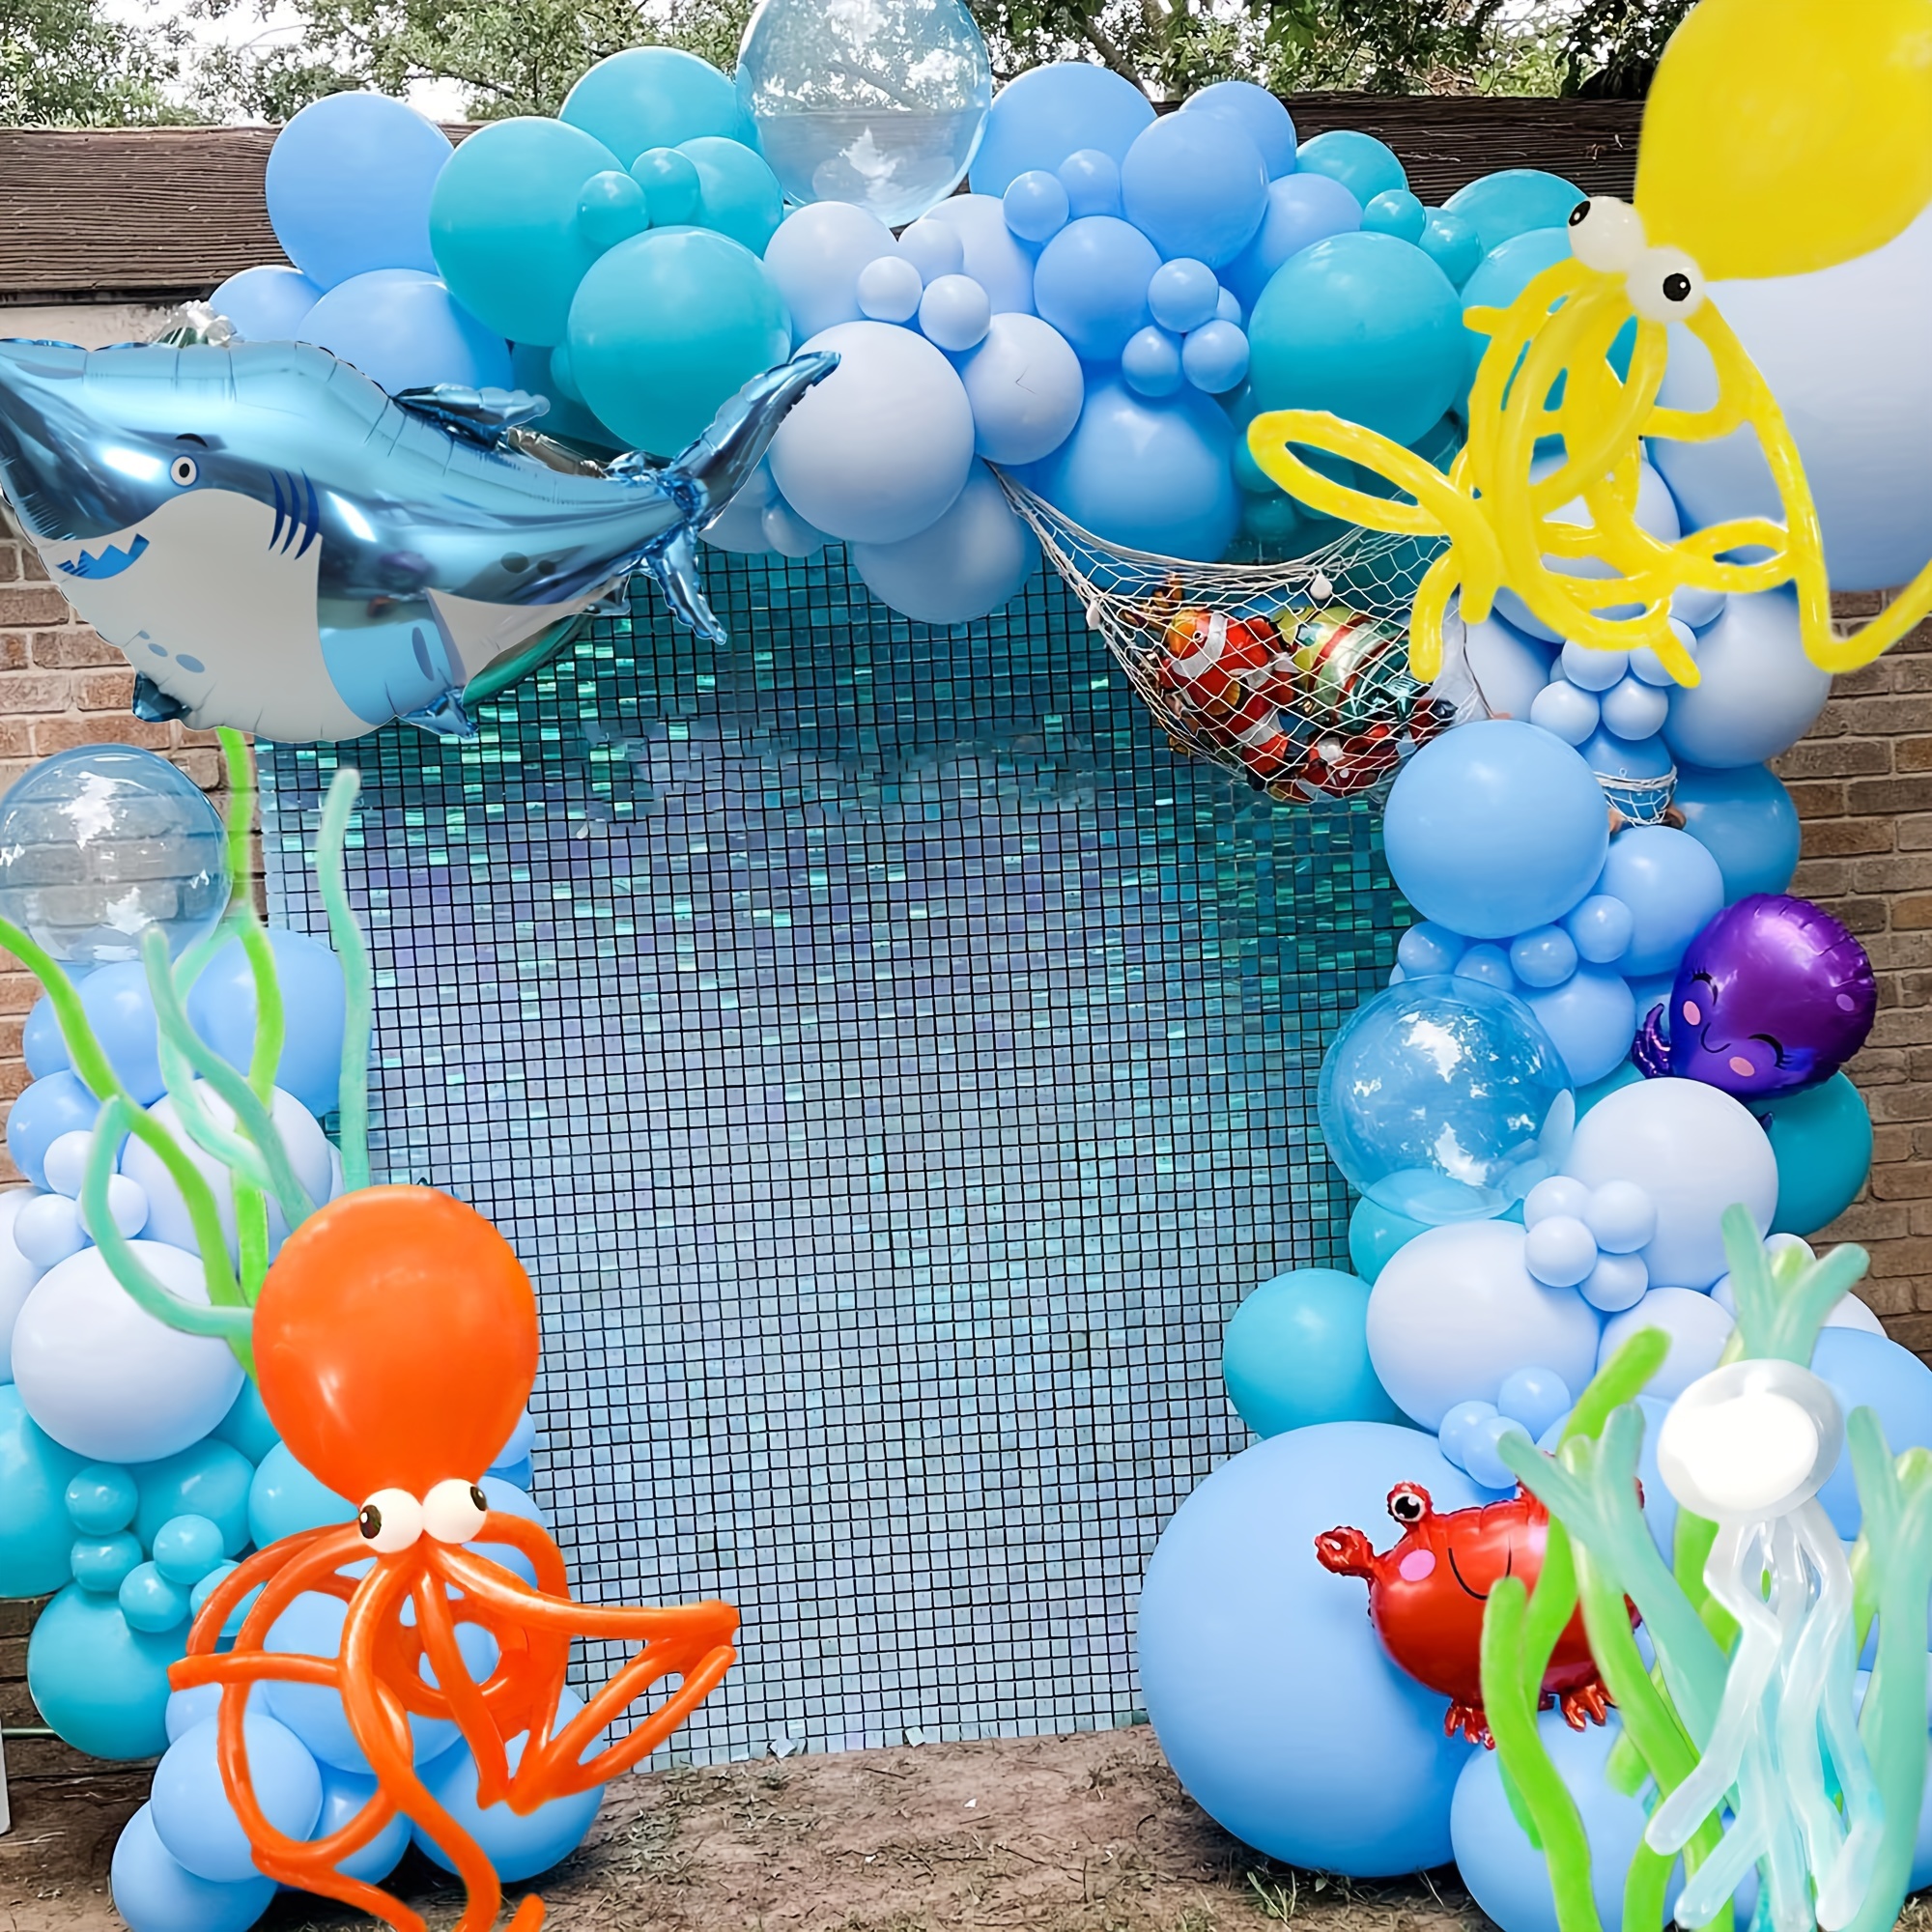 6pcs/set Azul Lilo & Stitch Tema 32inch Número Globos De Papel De Aluminio  Decoraciones De La Fiesta De Cumpleaños Baby Shower